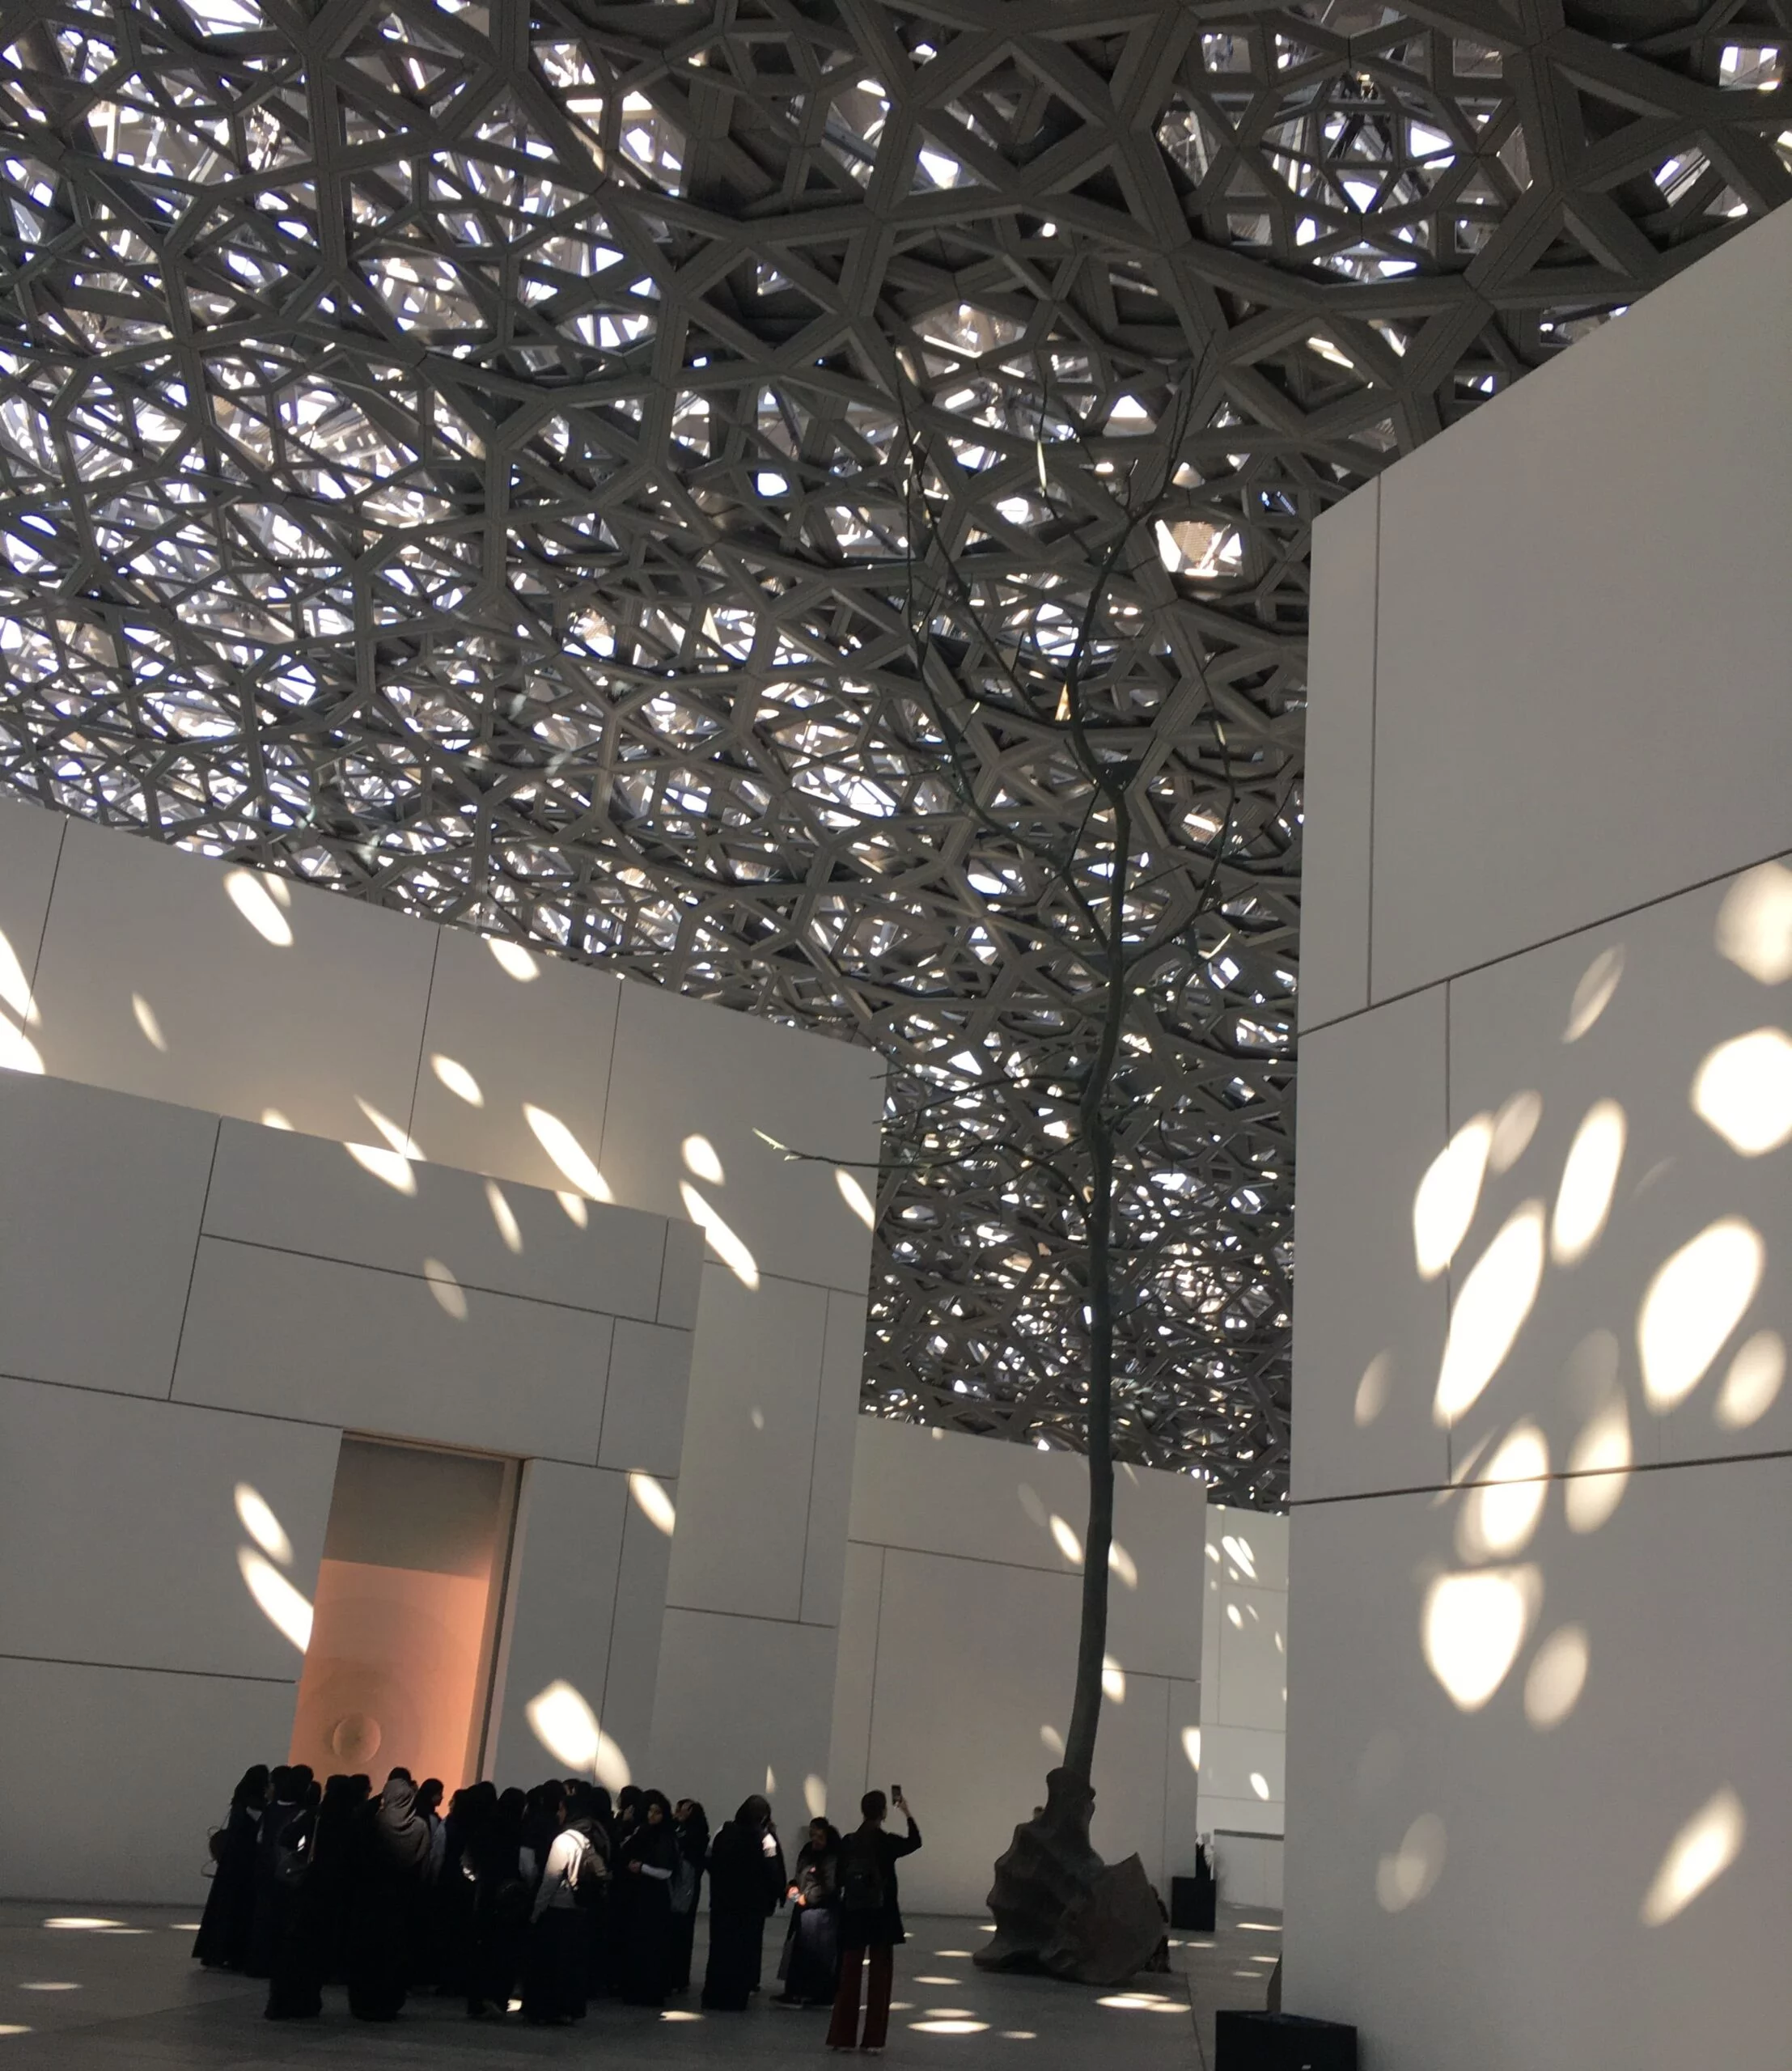 Louvre - Indoor Activities in Abu Dhabi